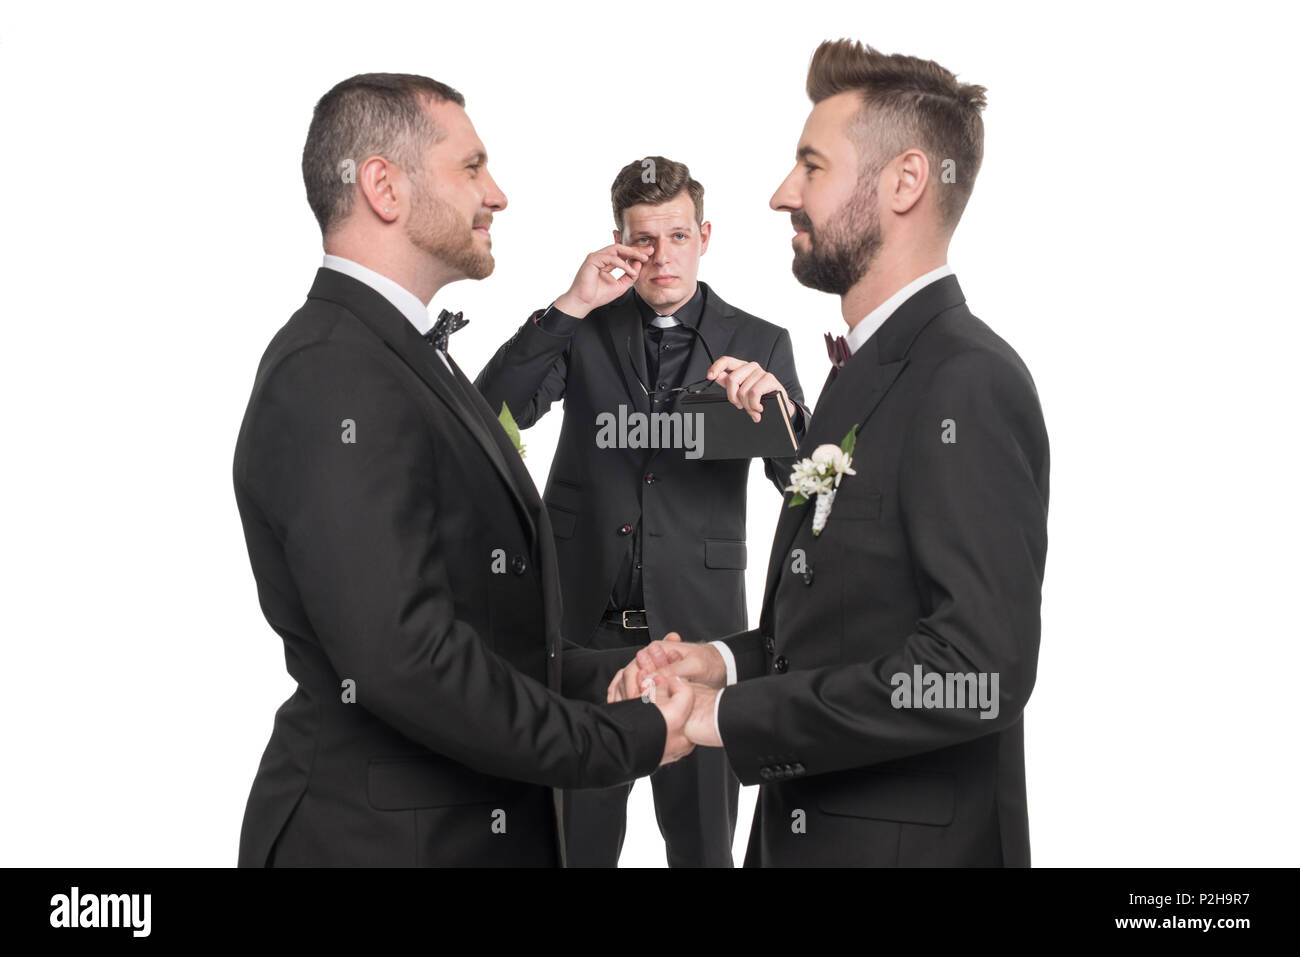 Pareja homosexual pronunciar votos y tomados de la mano en la ceremonia de boda Foto de stock